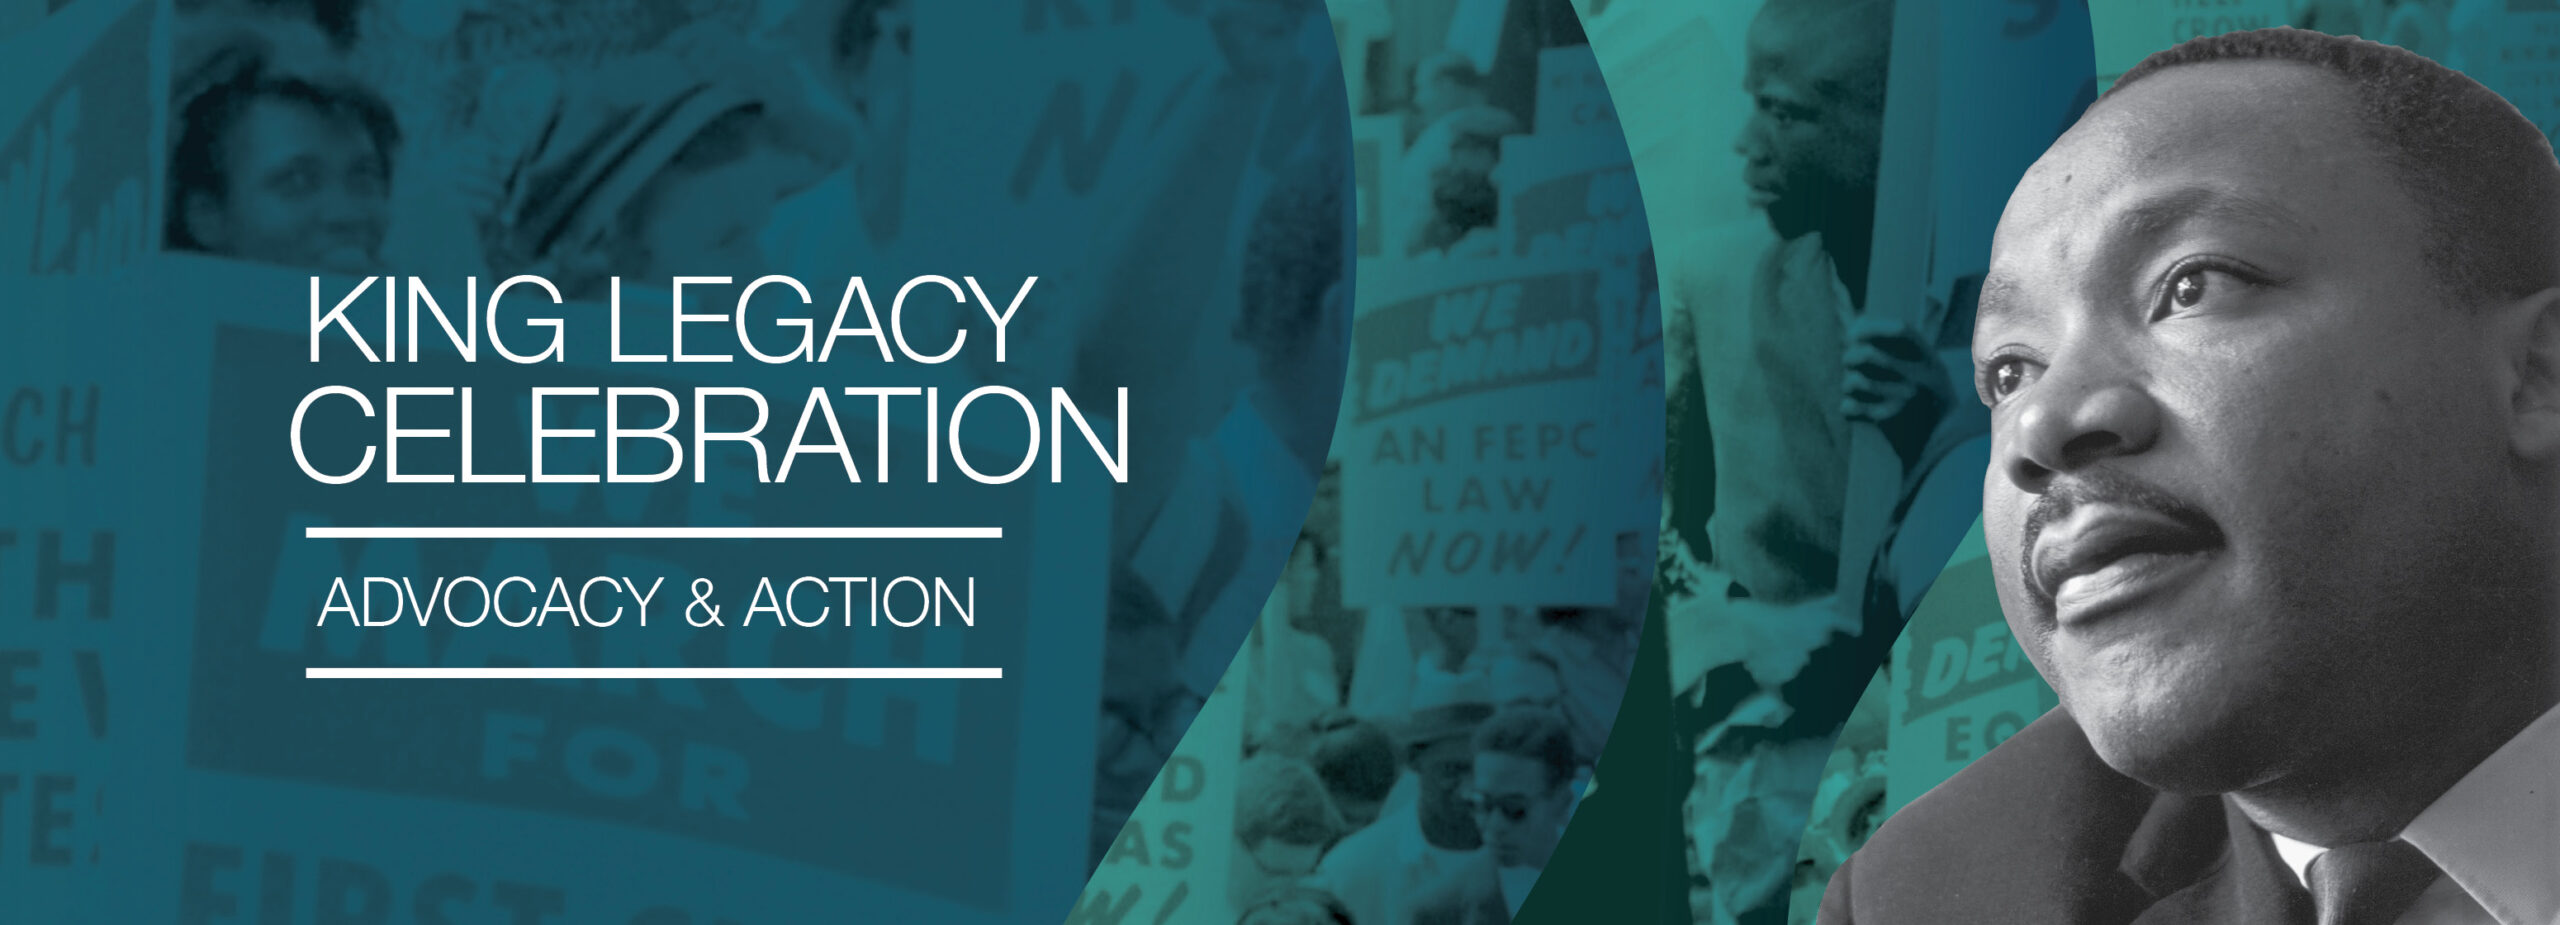 King Legacy Celebration: Advocacy & Action – National Underground